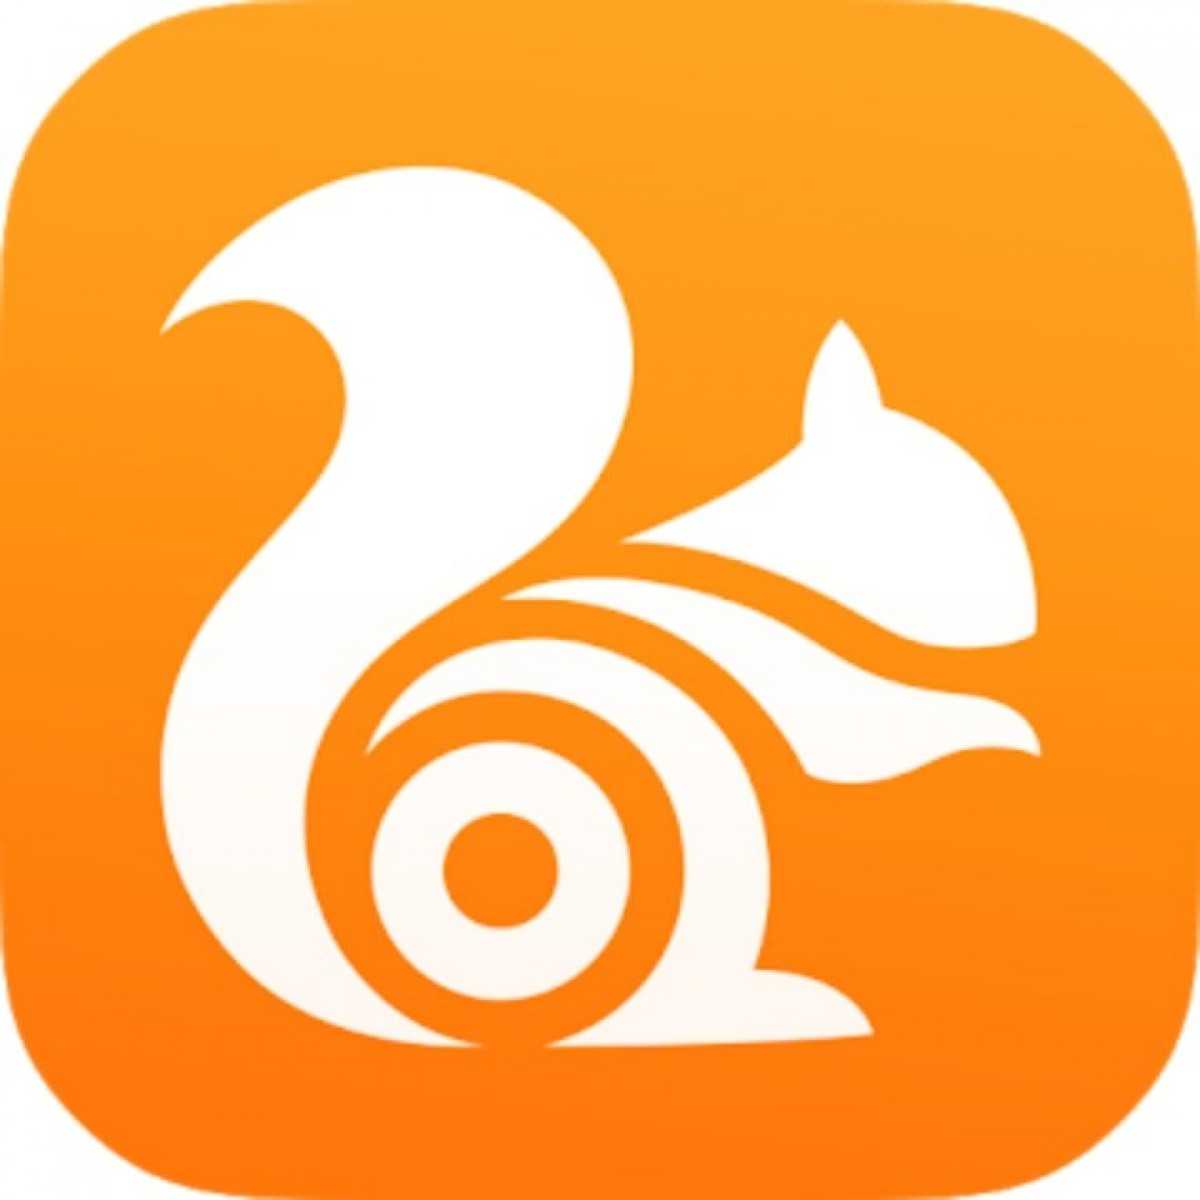 UC Browser- Free & Fast Video Downloader, News App v13.0.5.1290 (Mod) Apk